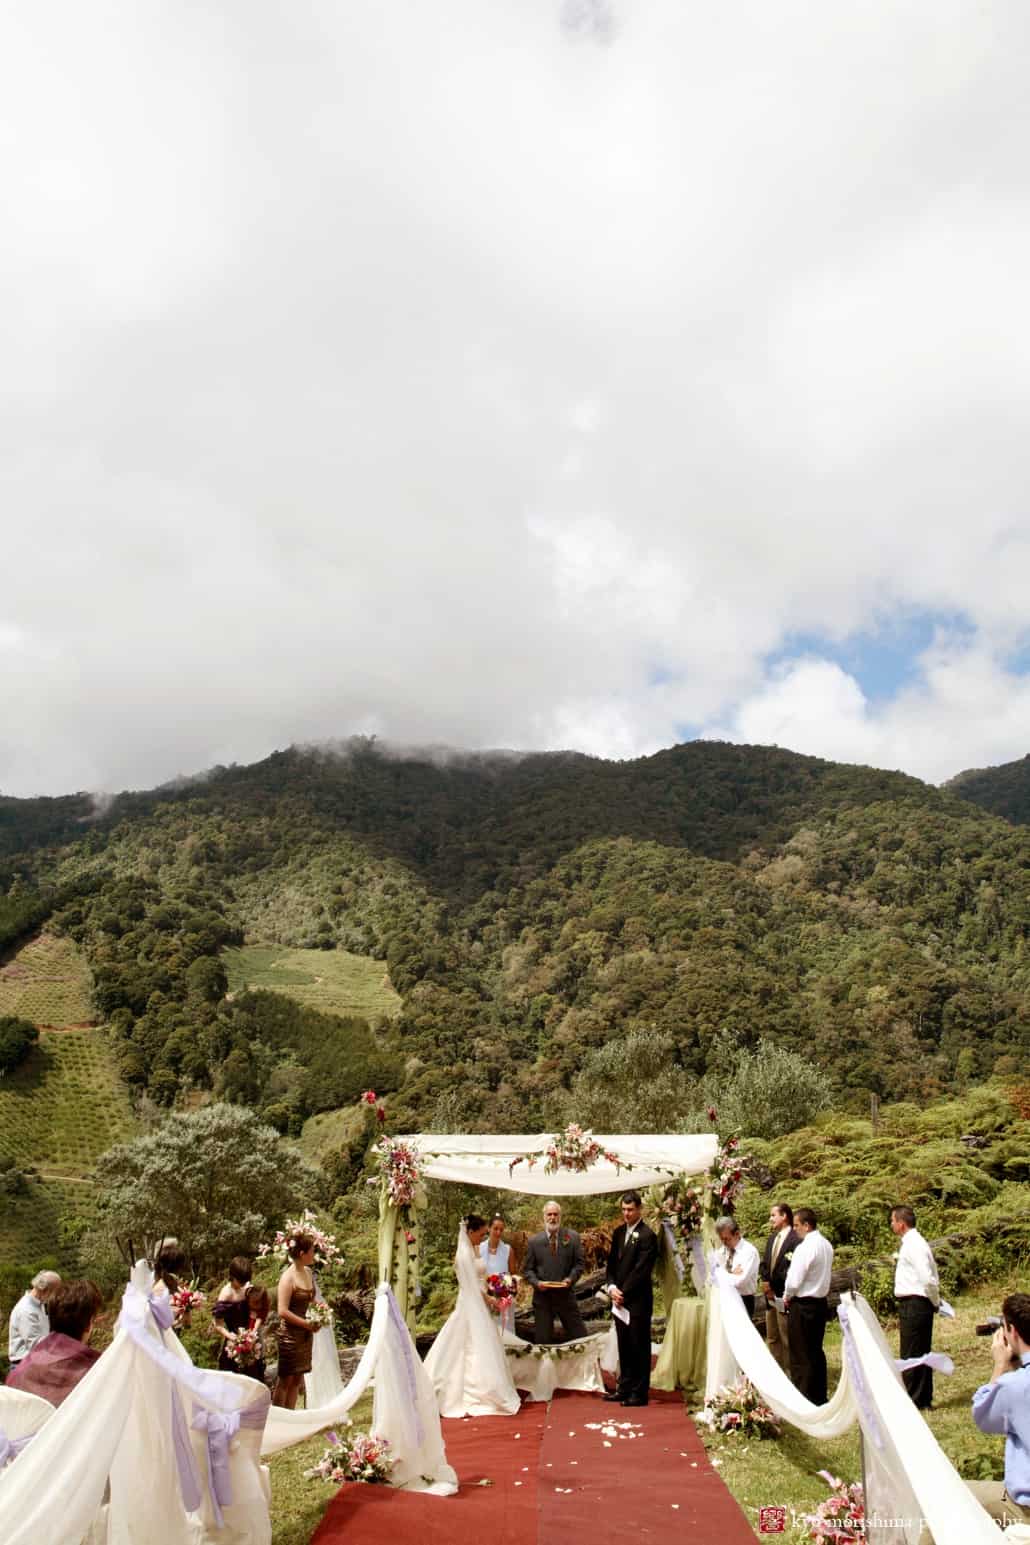 Mountaintop wedding in Costa Rica near San Gerardo de Dota, photographed by Kyo Morishima